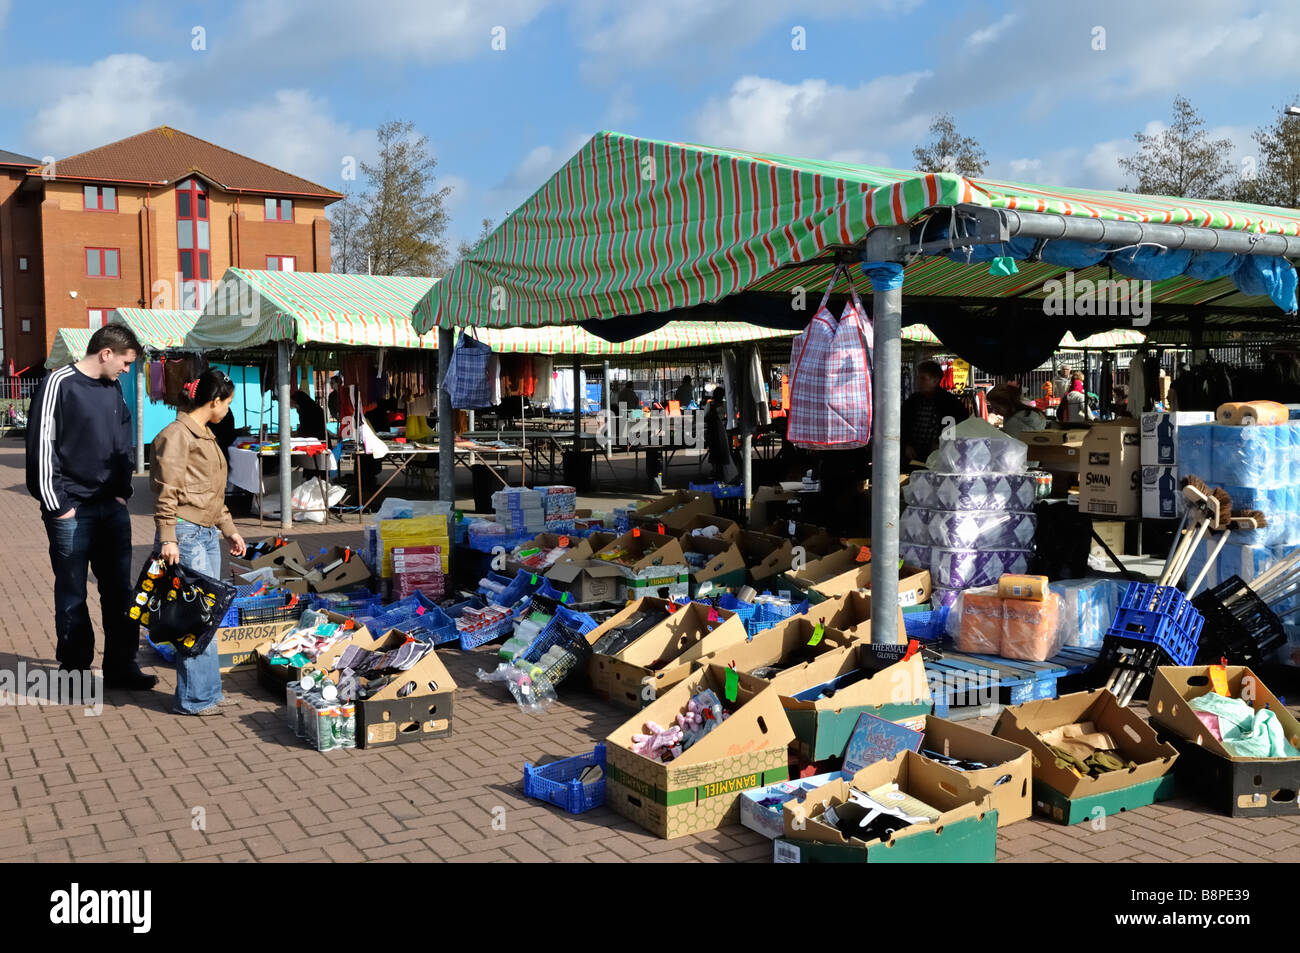 Outdoor Sunday market stalls Eastville Bristol England Stock Photo